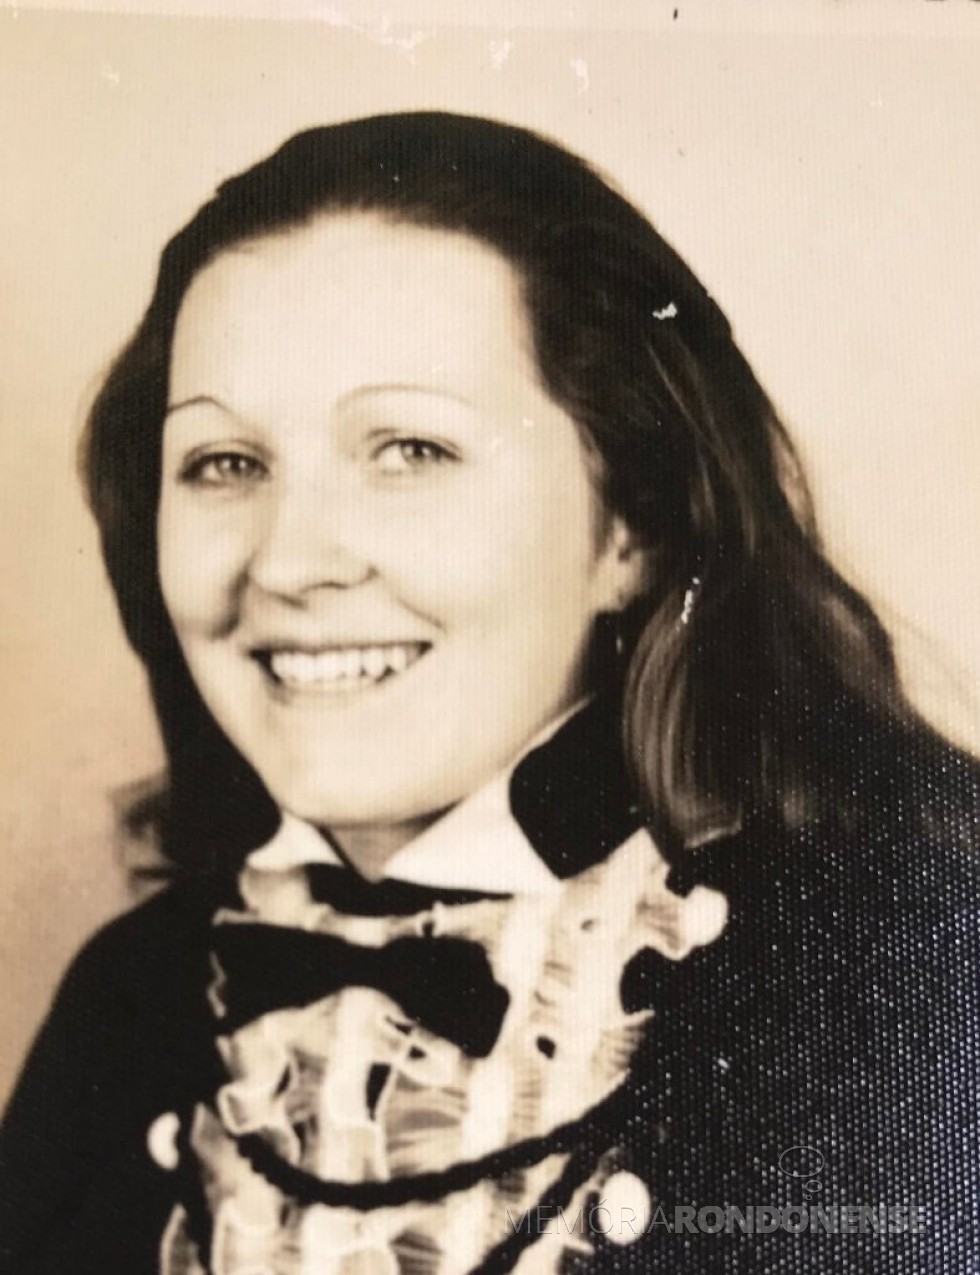 || Guisla Boehs, professora da então Escola Municipal no atual município de Mercedes que foi inagurada em março de 1977.
Imagem: Arquivo pessoal - FOTO 11 - 